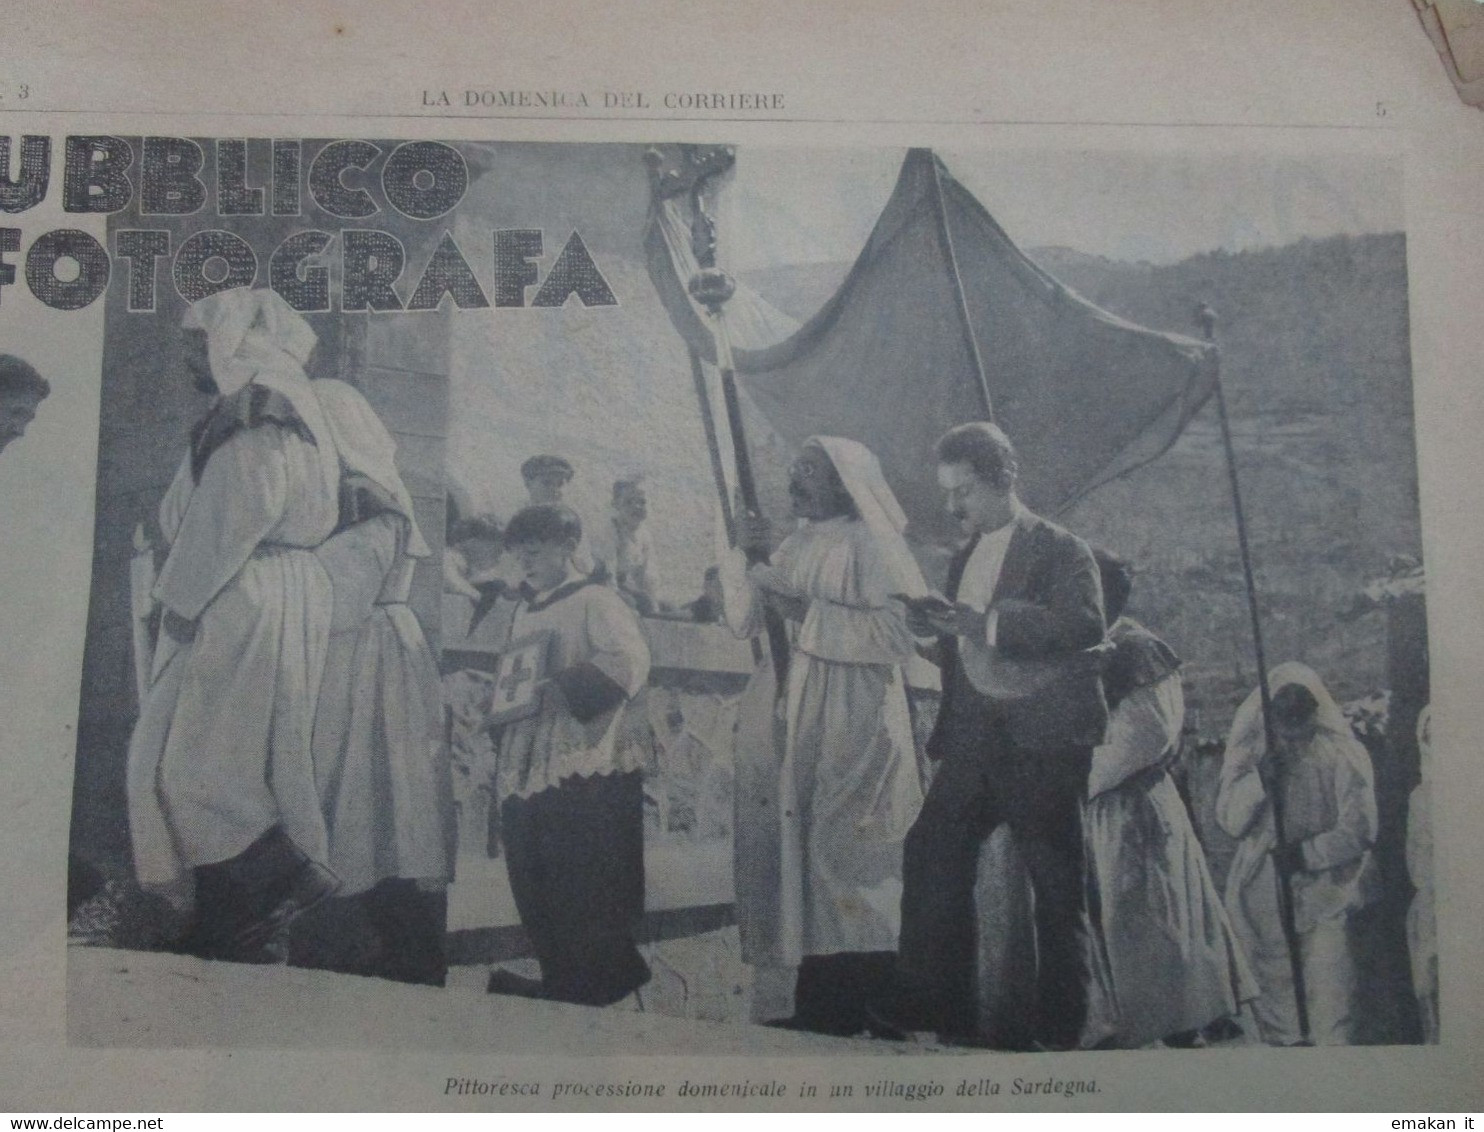 # DOMENICA DEL CORRIERE N 3 /1937 ETIOPIA / TORGIANO (PG) / PROCESSIONE IN SARDEGNA  / CAMPARI - Prime Edizioni